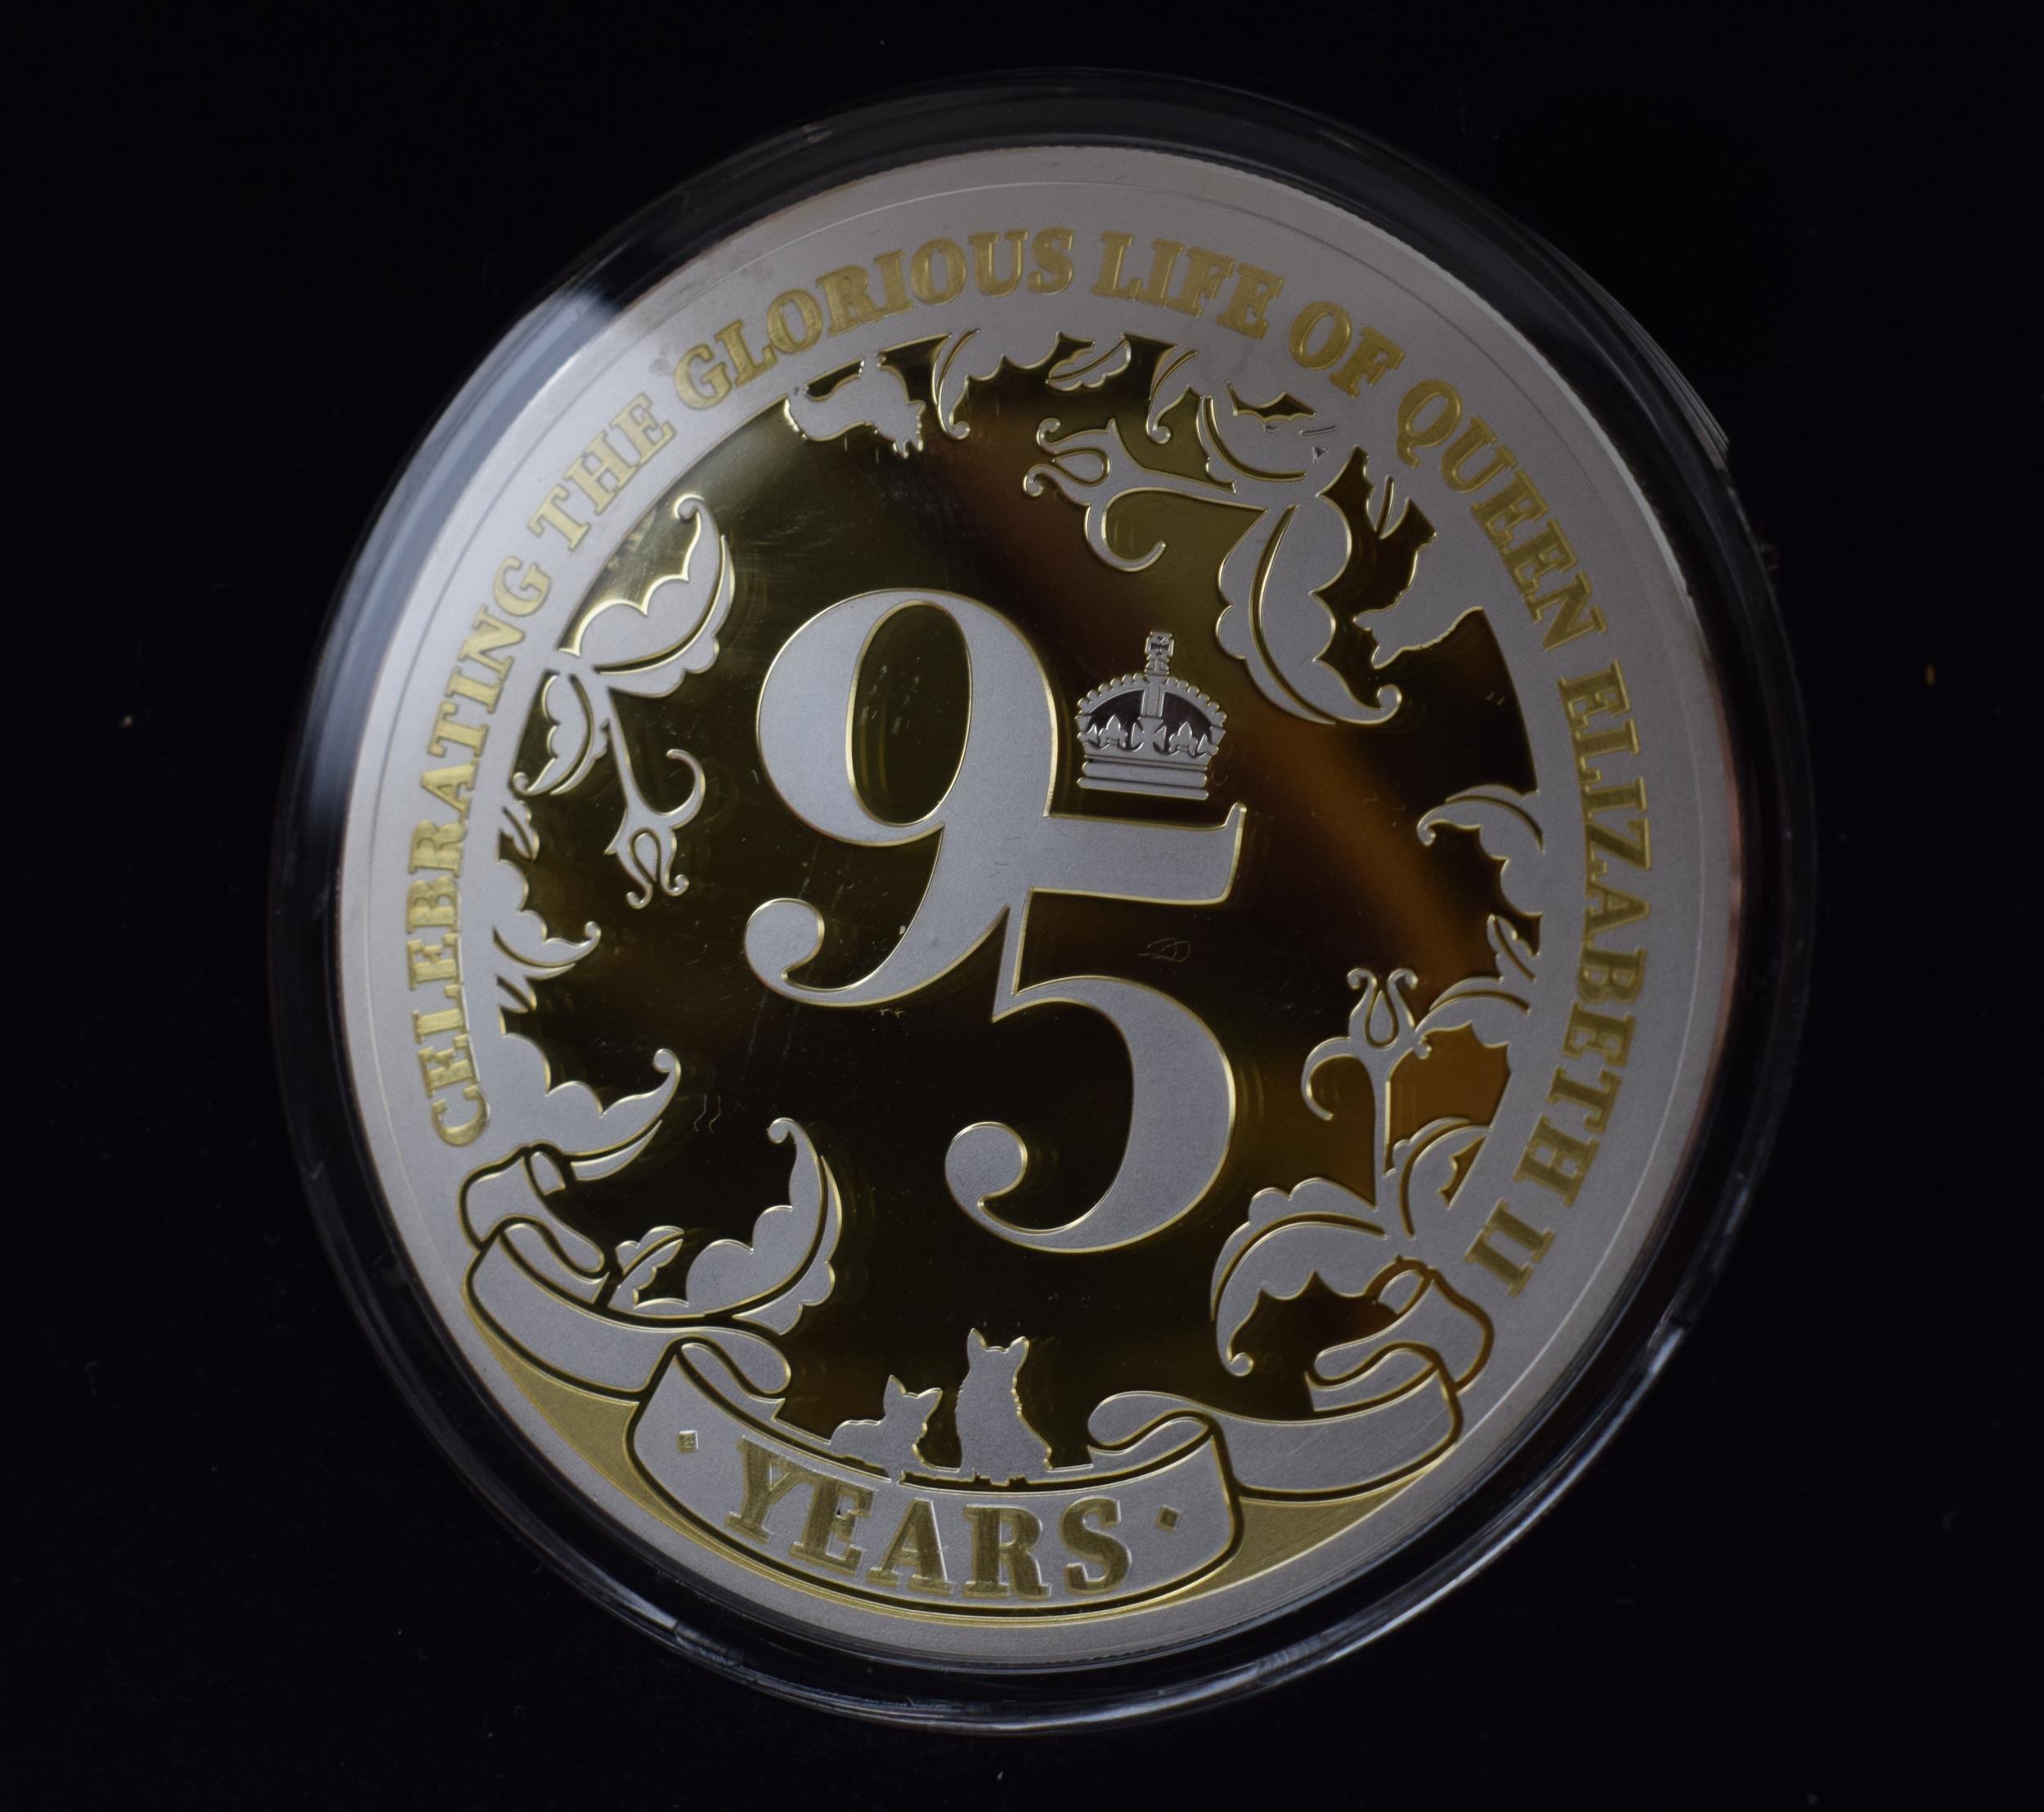 Cased Jubilee Mint Fine Silver Proof 5 oz coin Queen Elizabeth II 95th Birthday, 155.5 grams.